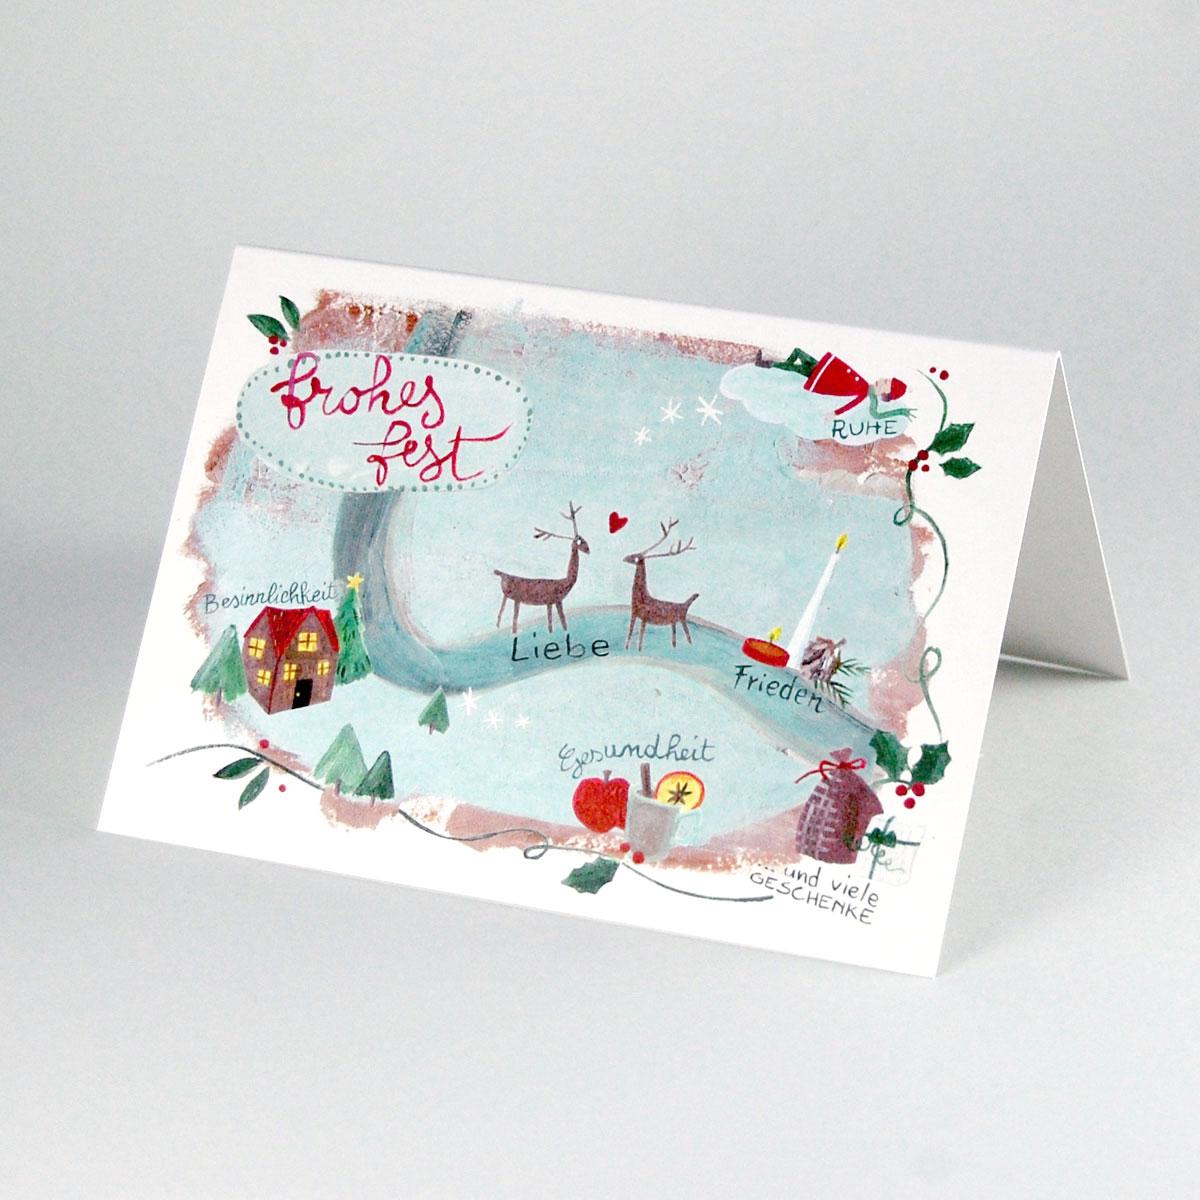 Recycling-Weihnachtskarte: frohes fest (Liebe, Frieden, Gesundheit...)